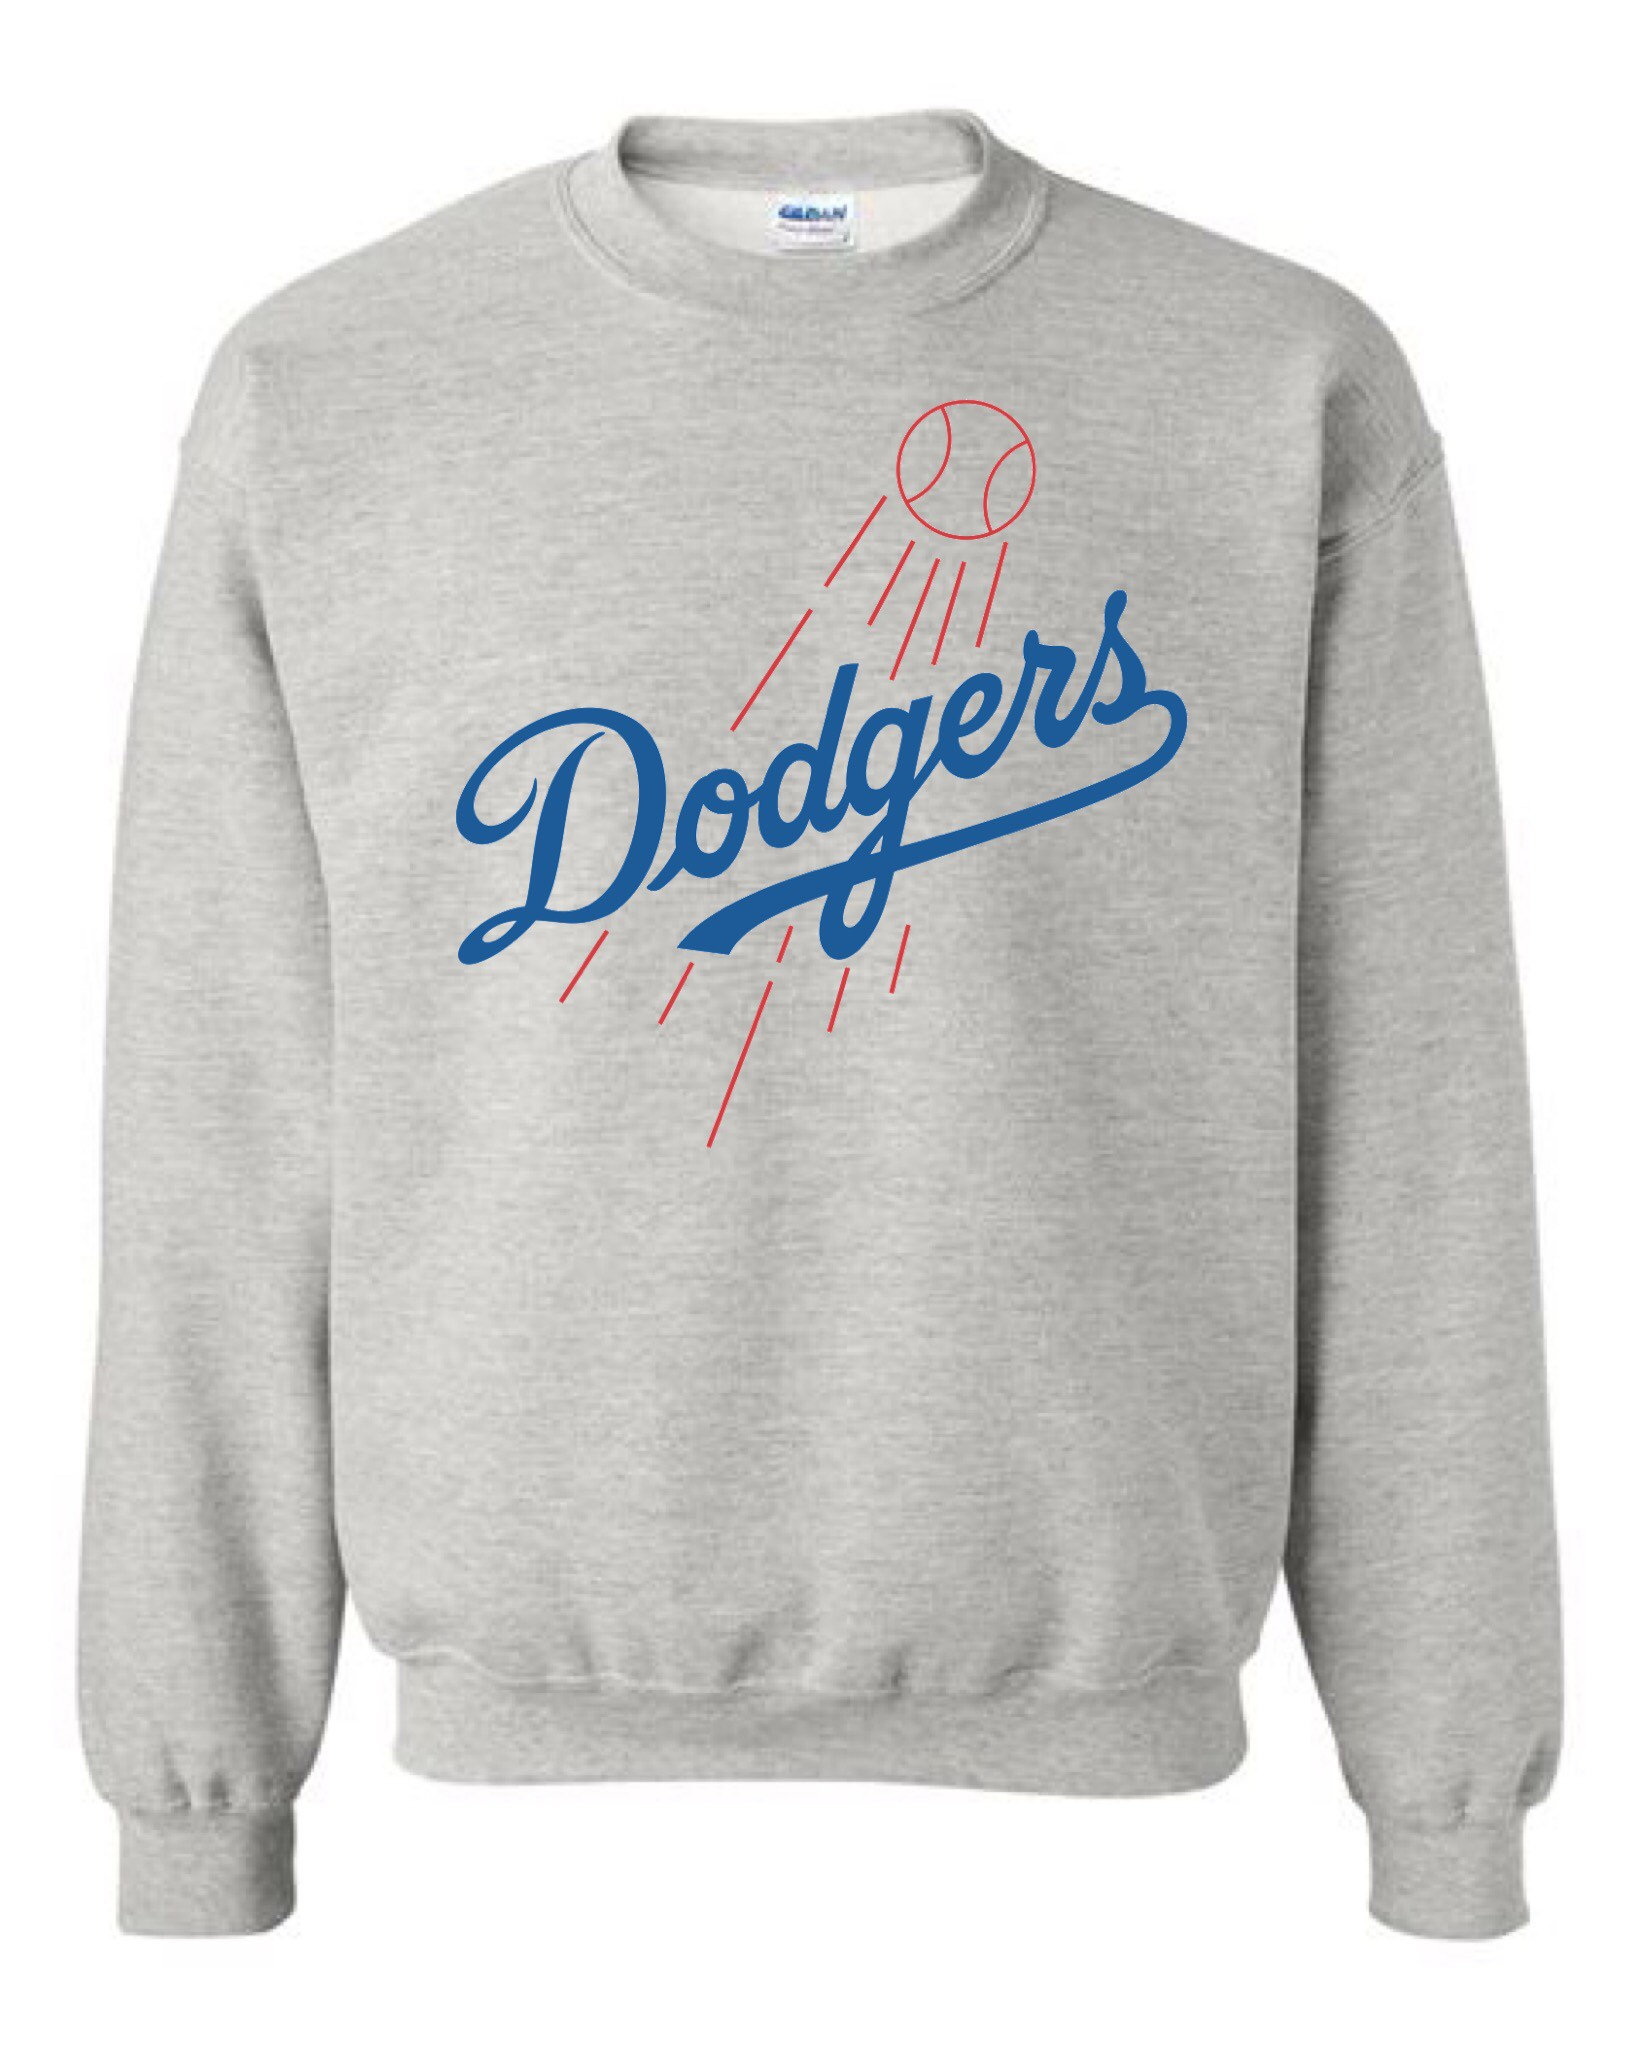 Classic Dodgers Crewneck Sweatshirt Dodgers Crewneck LA 